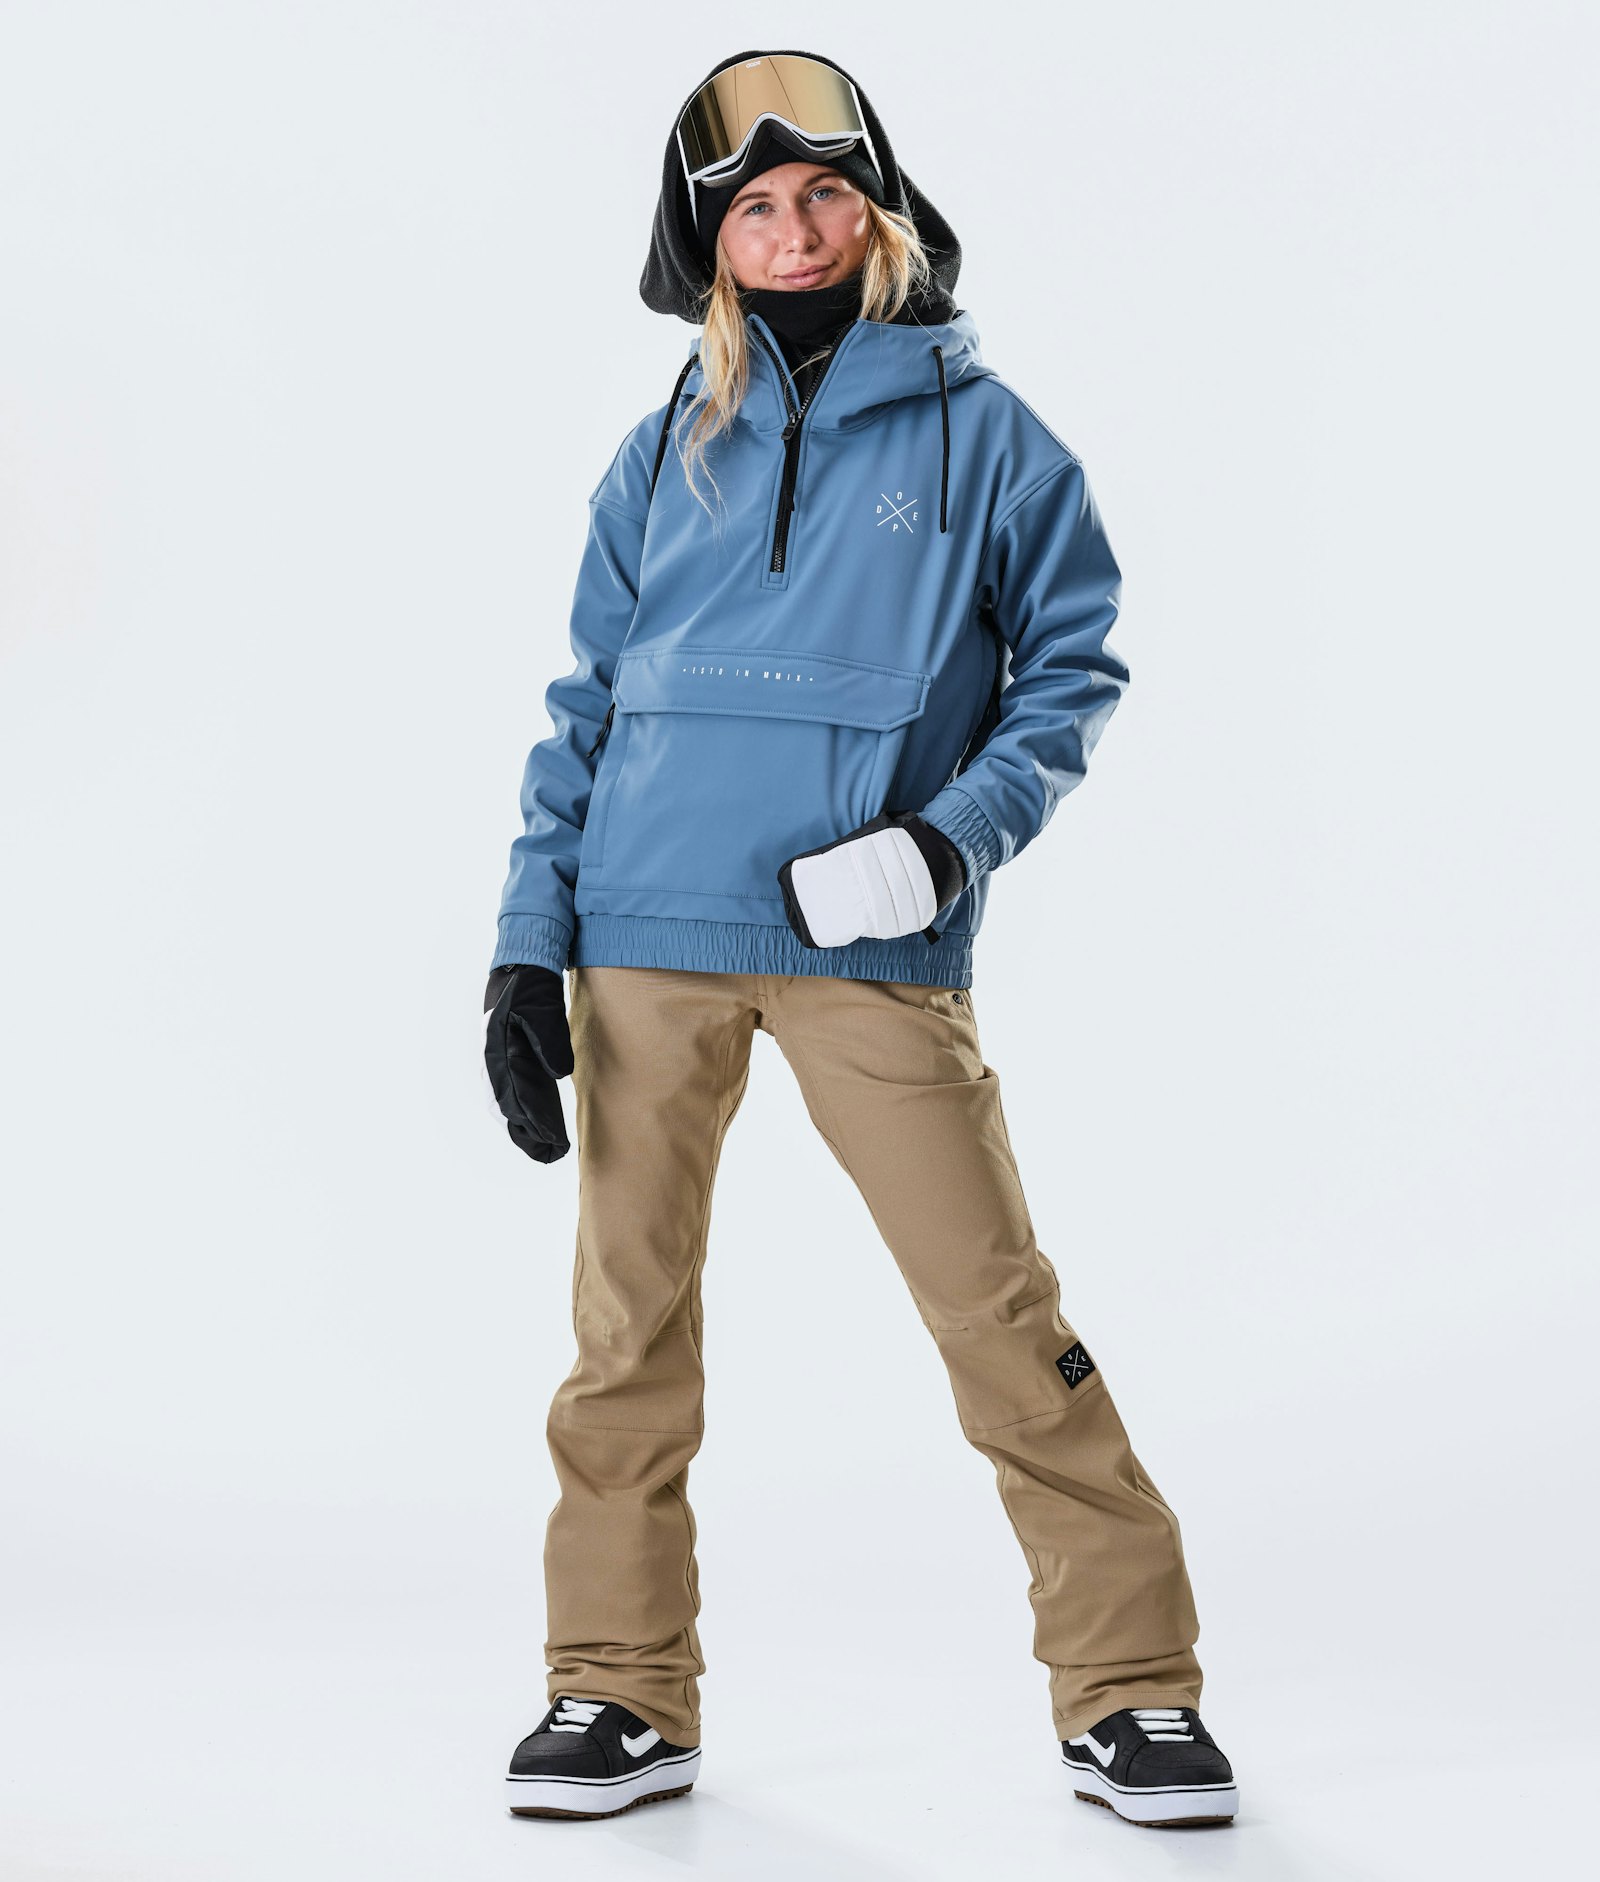 Cyclone W 2020 Snowboard Jacket Women Blue Steel